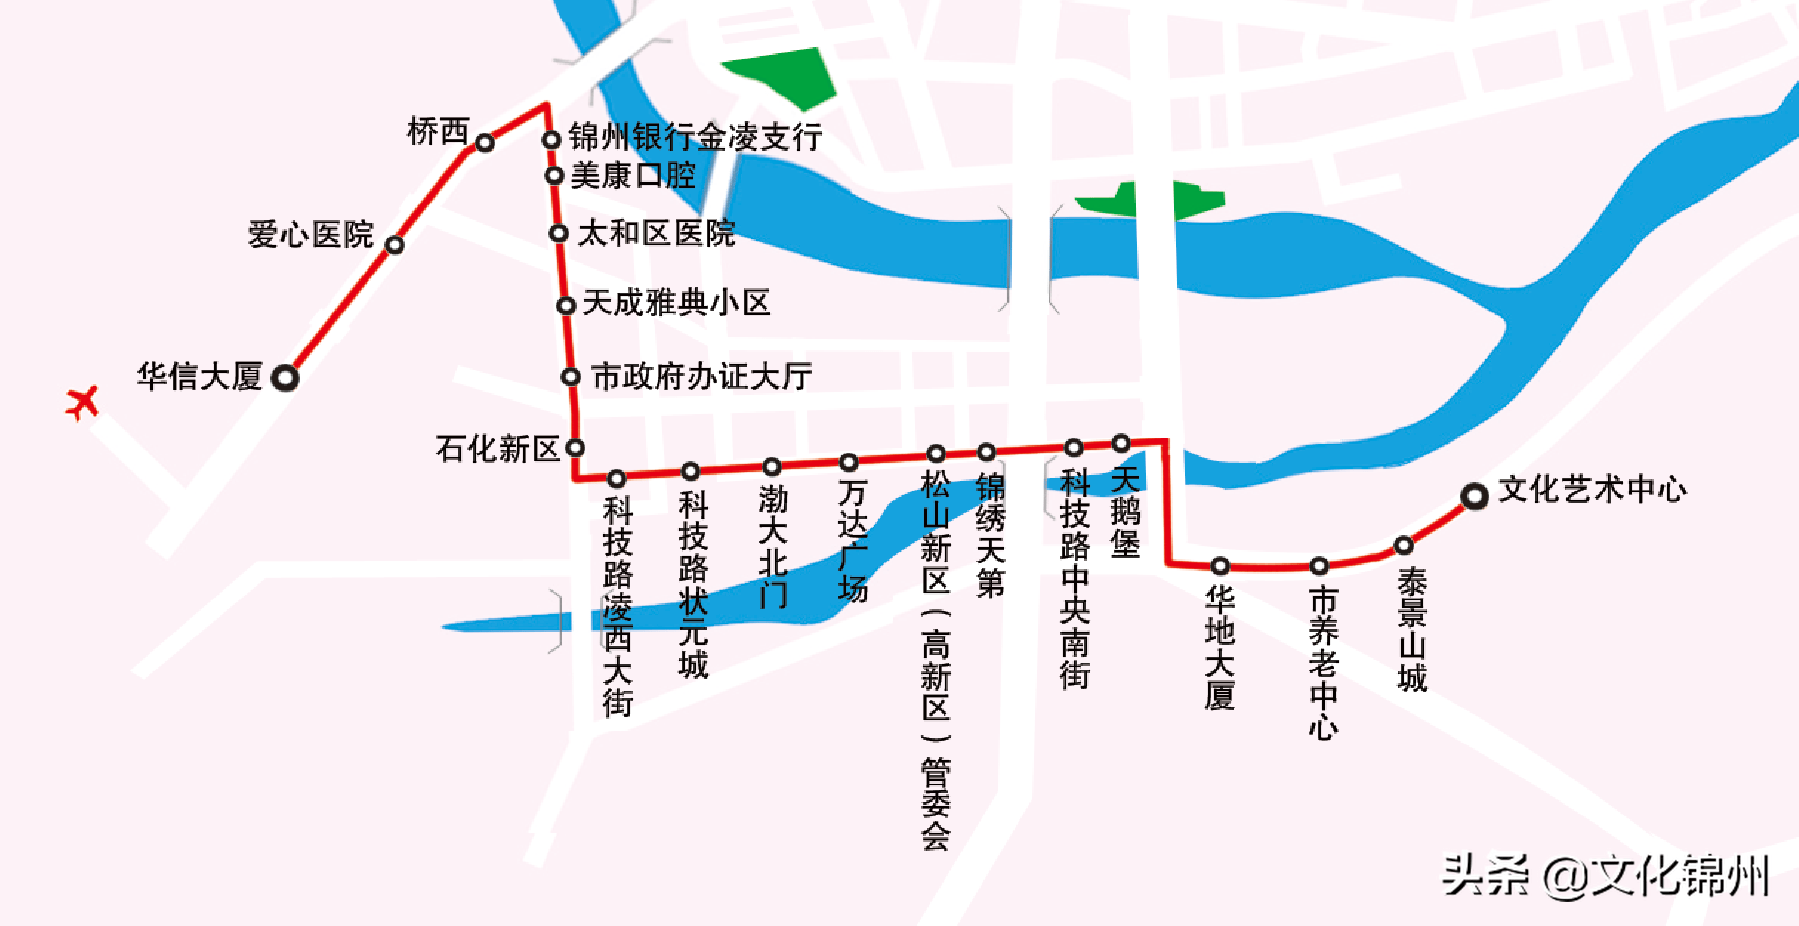 太和县公交车线路图图片